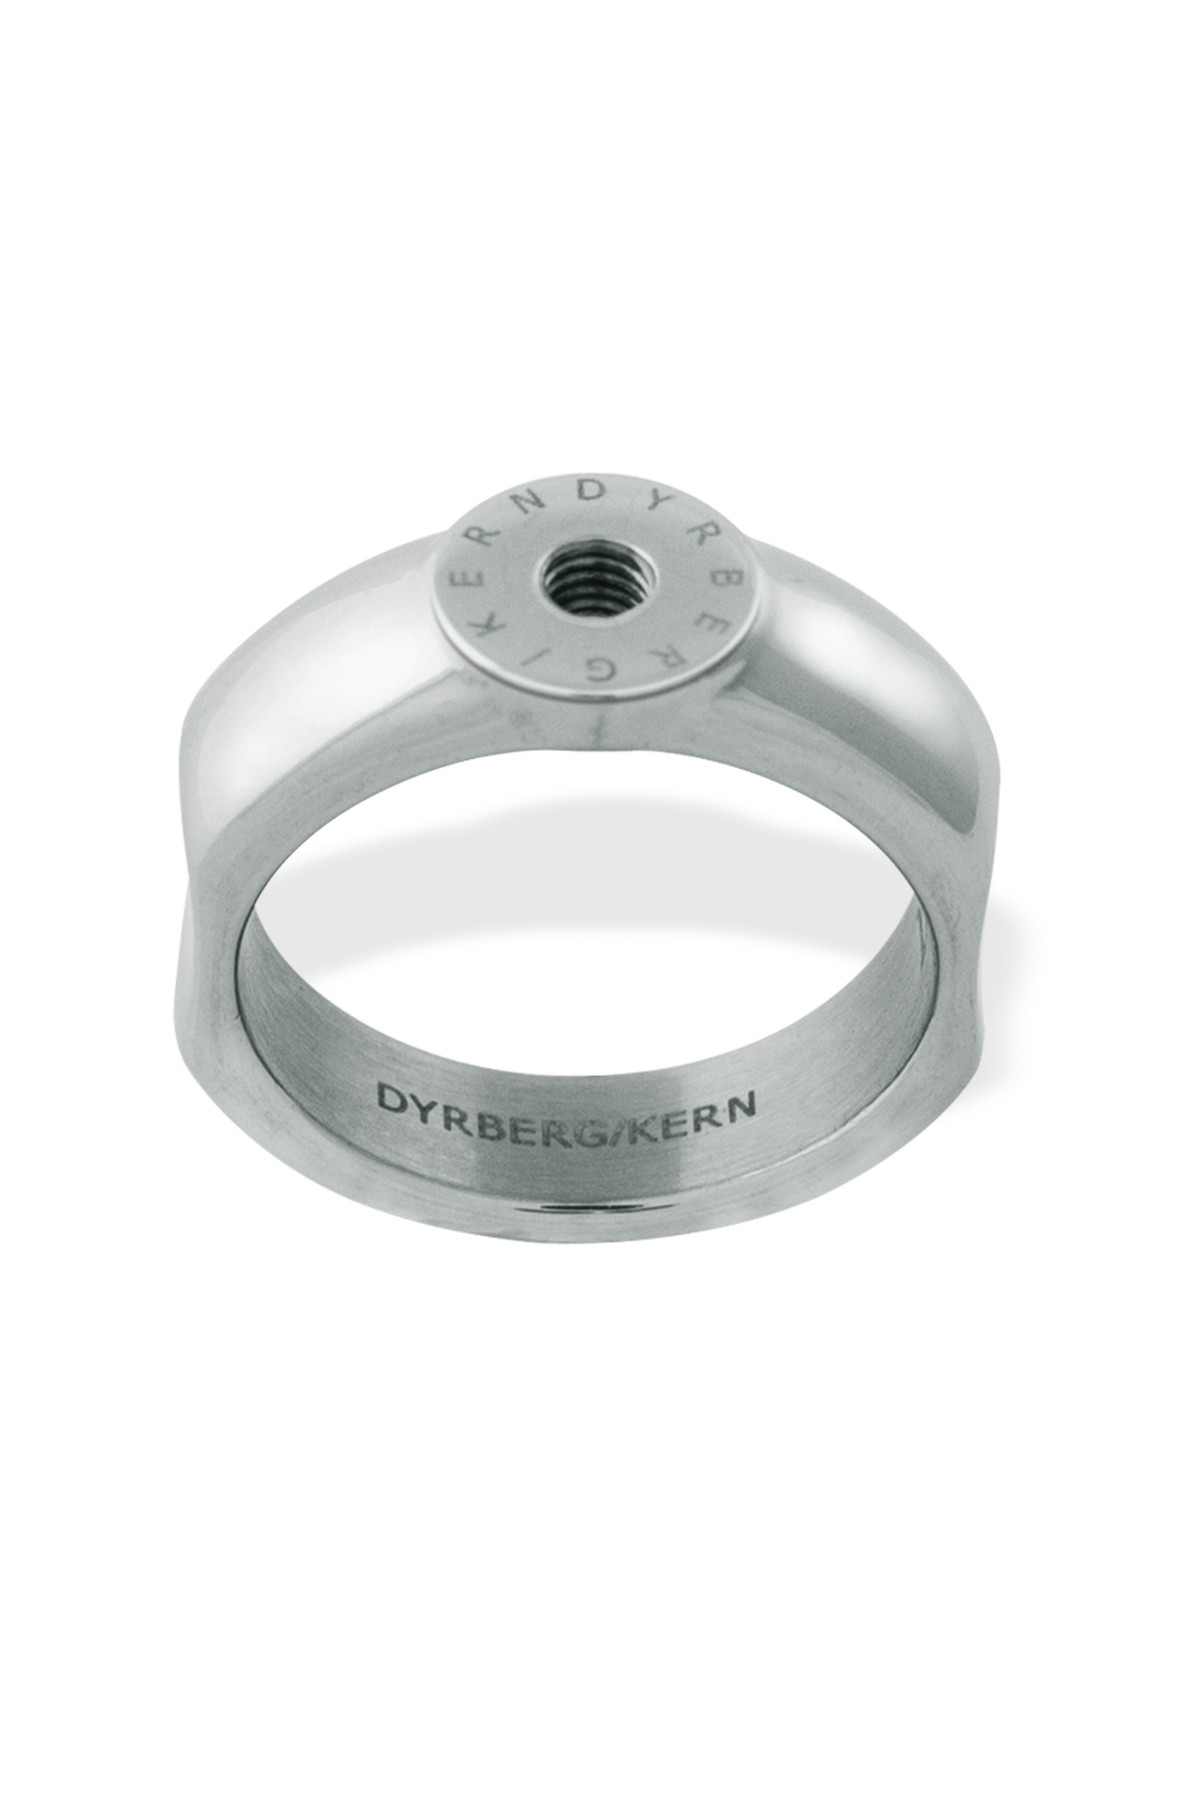 Billede af Dyrberg/kern Ring Ring, Farve: Sølv, Størrelse: IIII/60, Dame